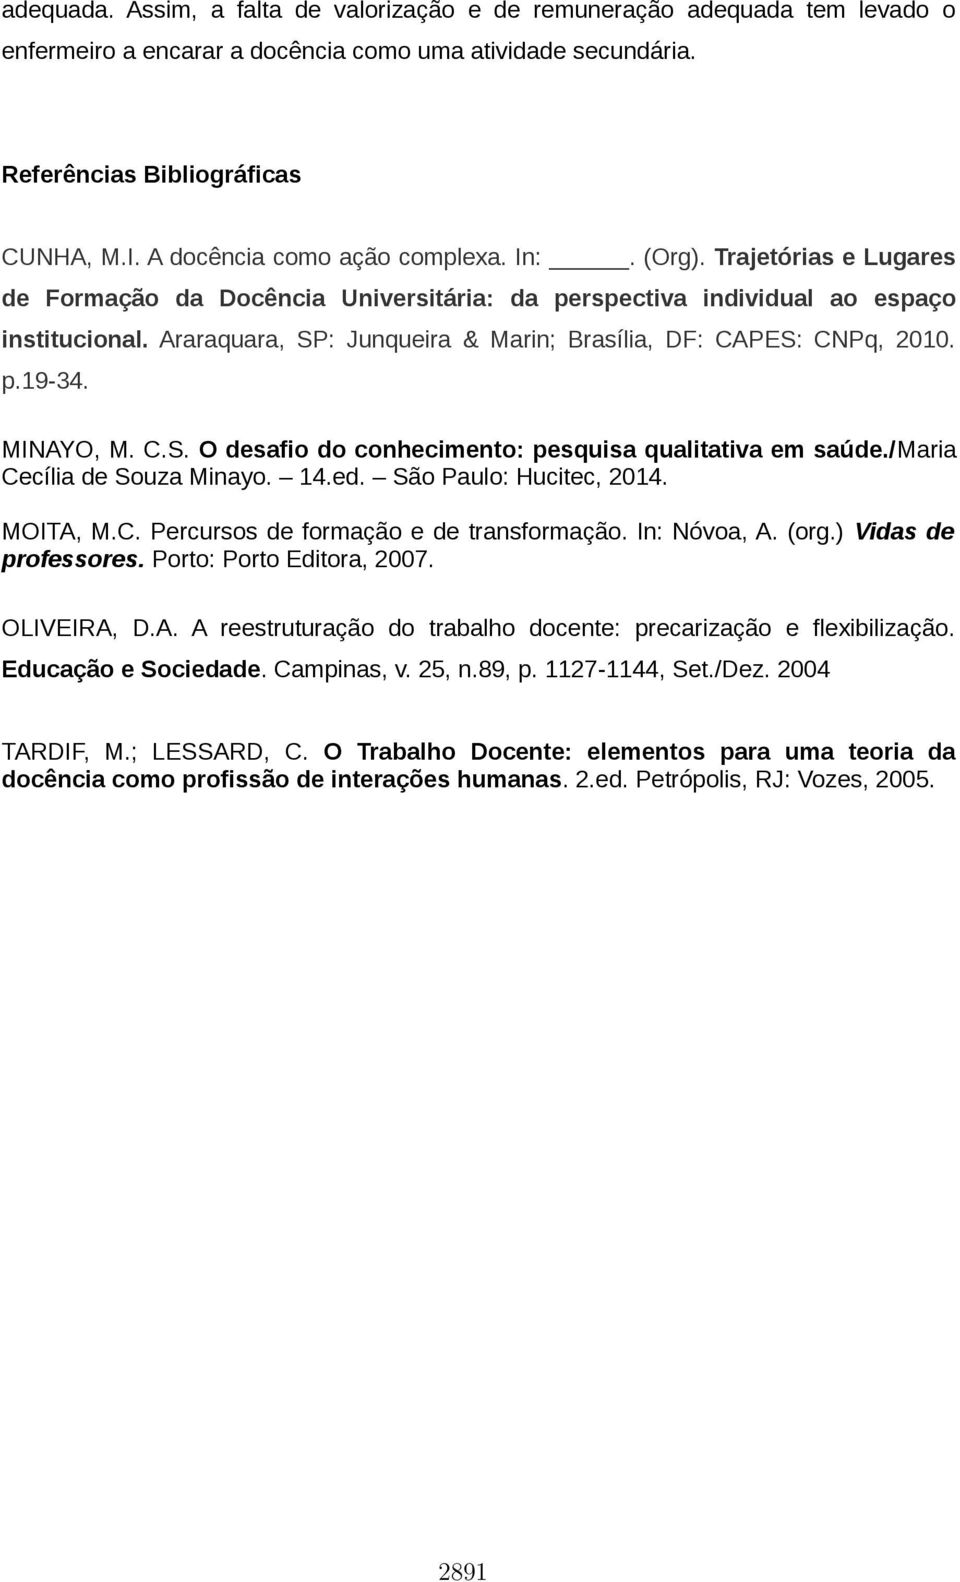 Araraquara, SP: Junqueira & Marin; Brasília, DF: CAPES: CNPq, 2010. p.19-34. MINAYO, M. C.S. O desafio do conhecimento: pesquisa qualitativa em saúde./maria Cecília de Souza Minayo. 14.ed.